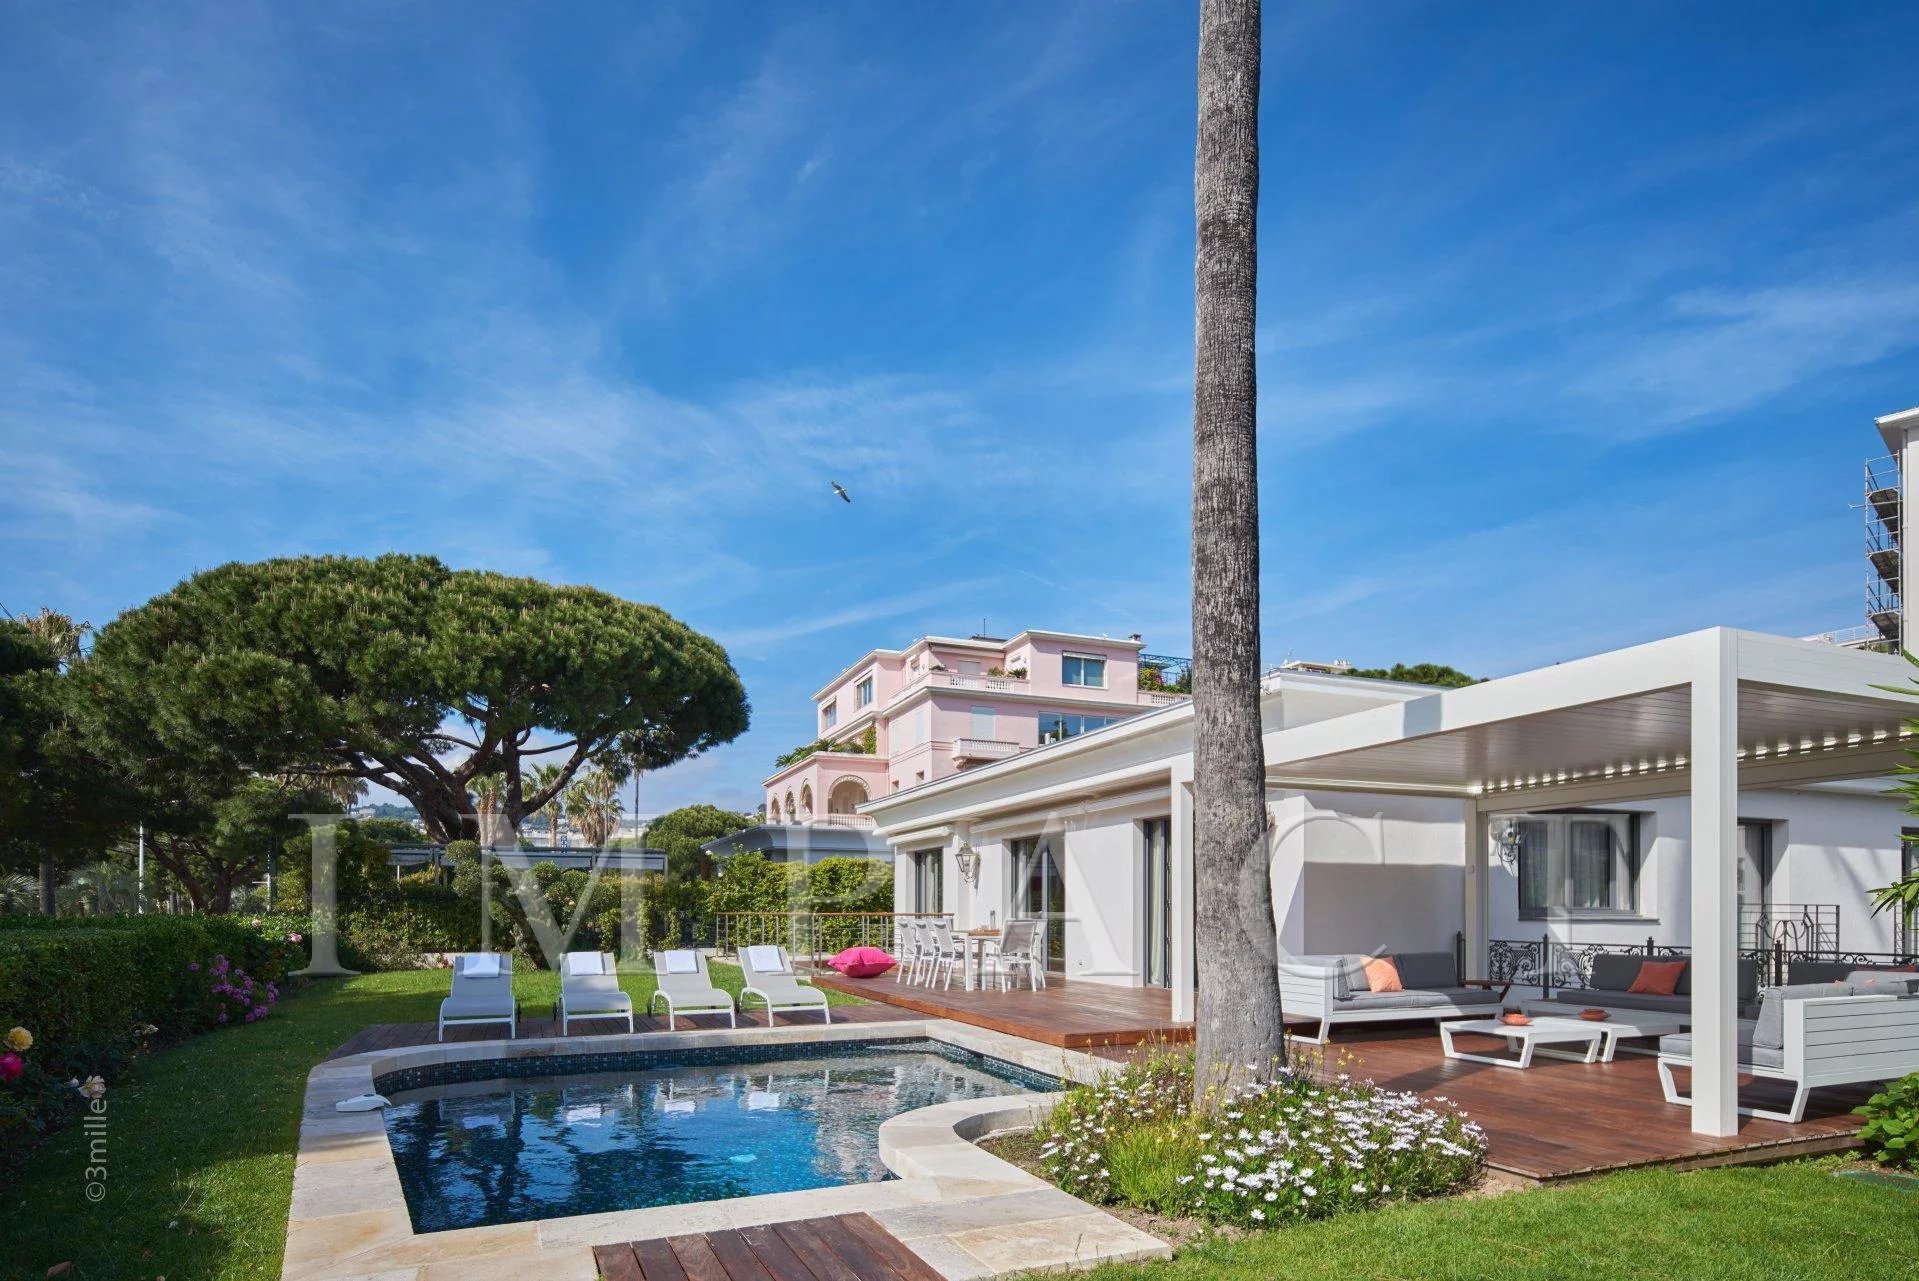 Villa  à louer située sur la Croisette, vue mer, Cannes